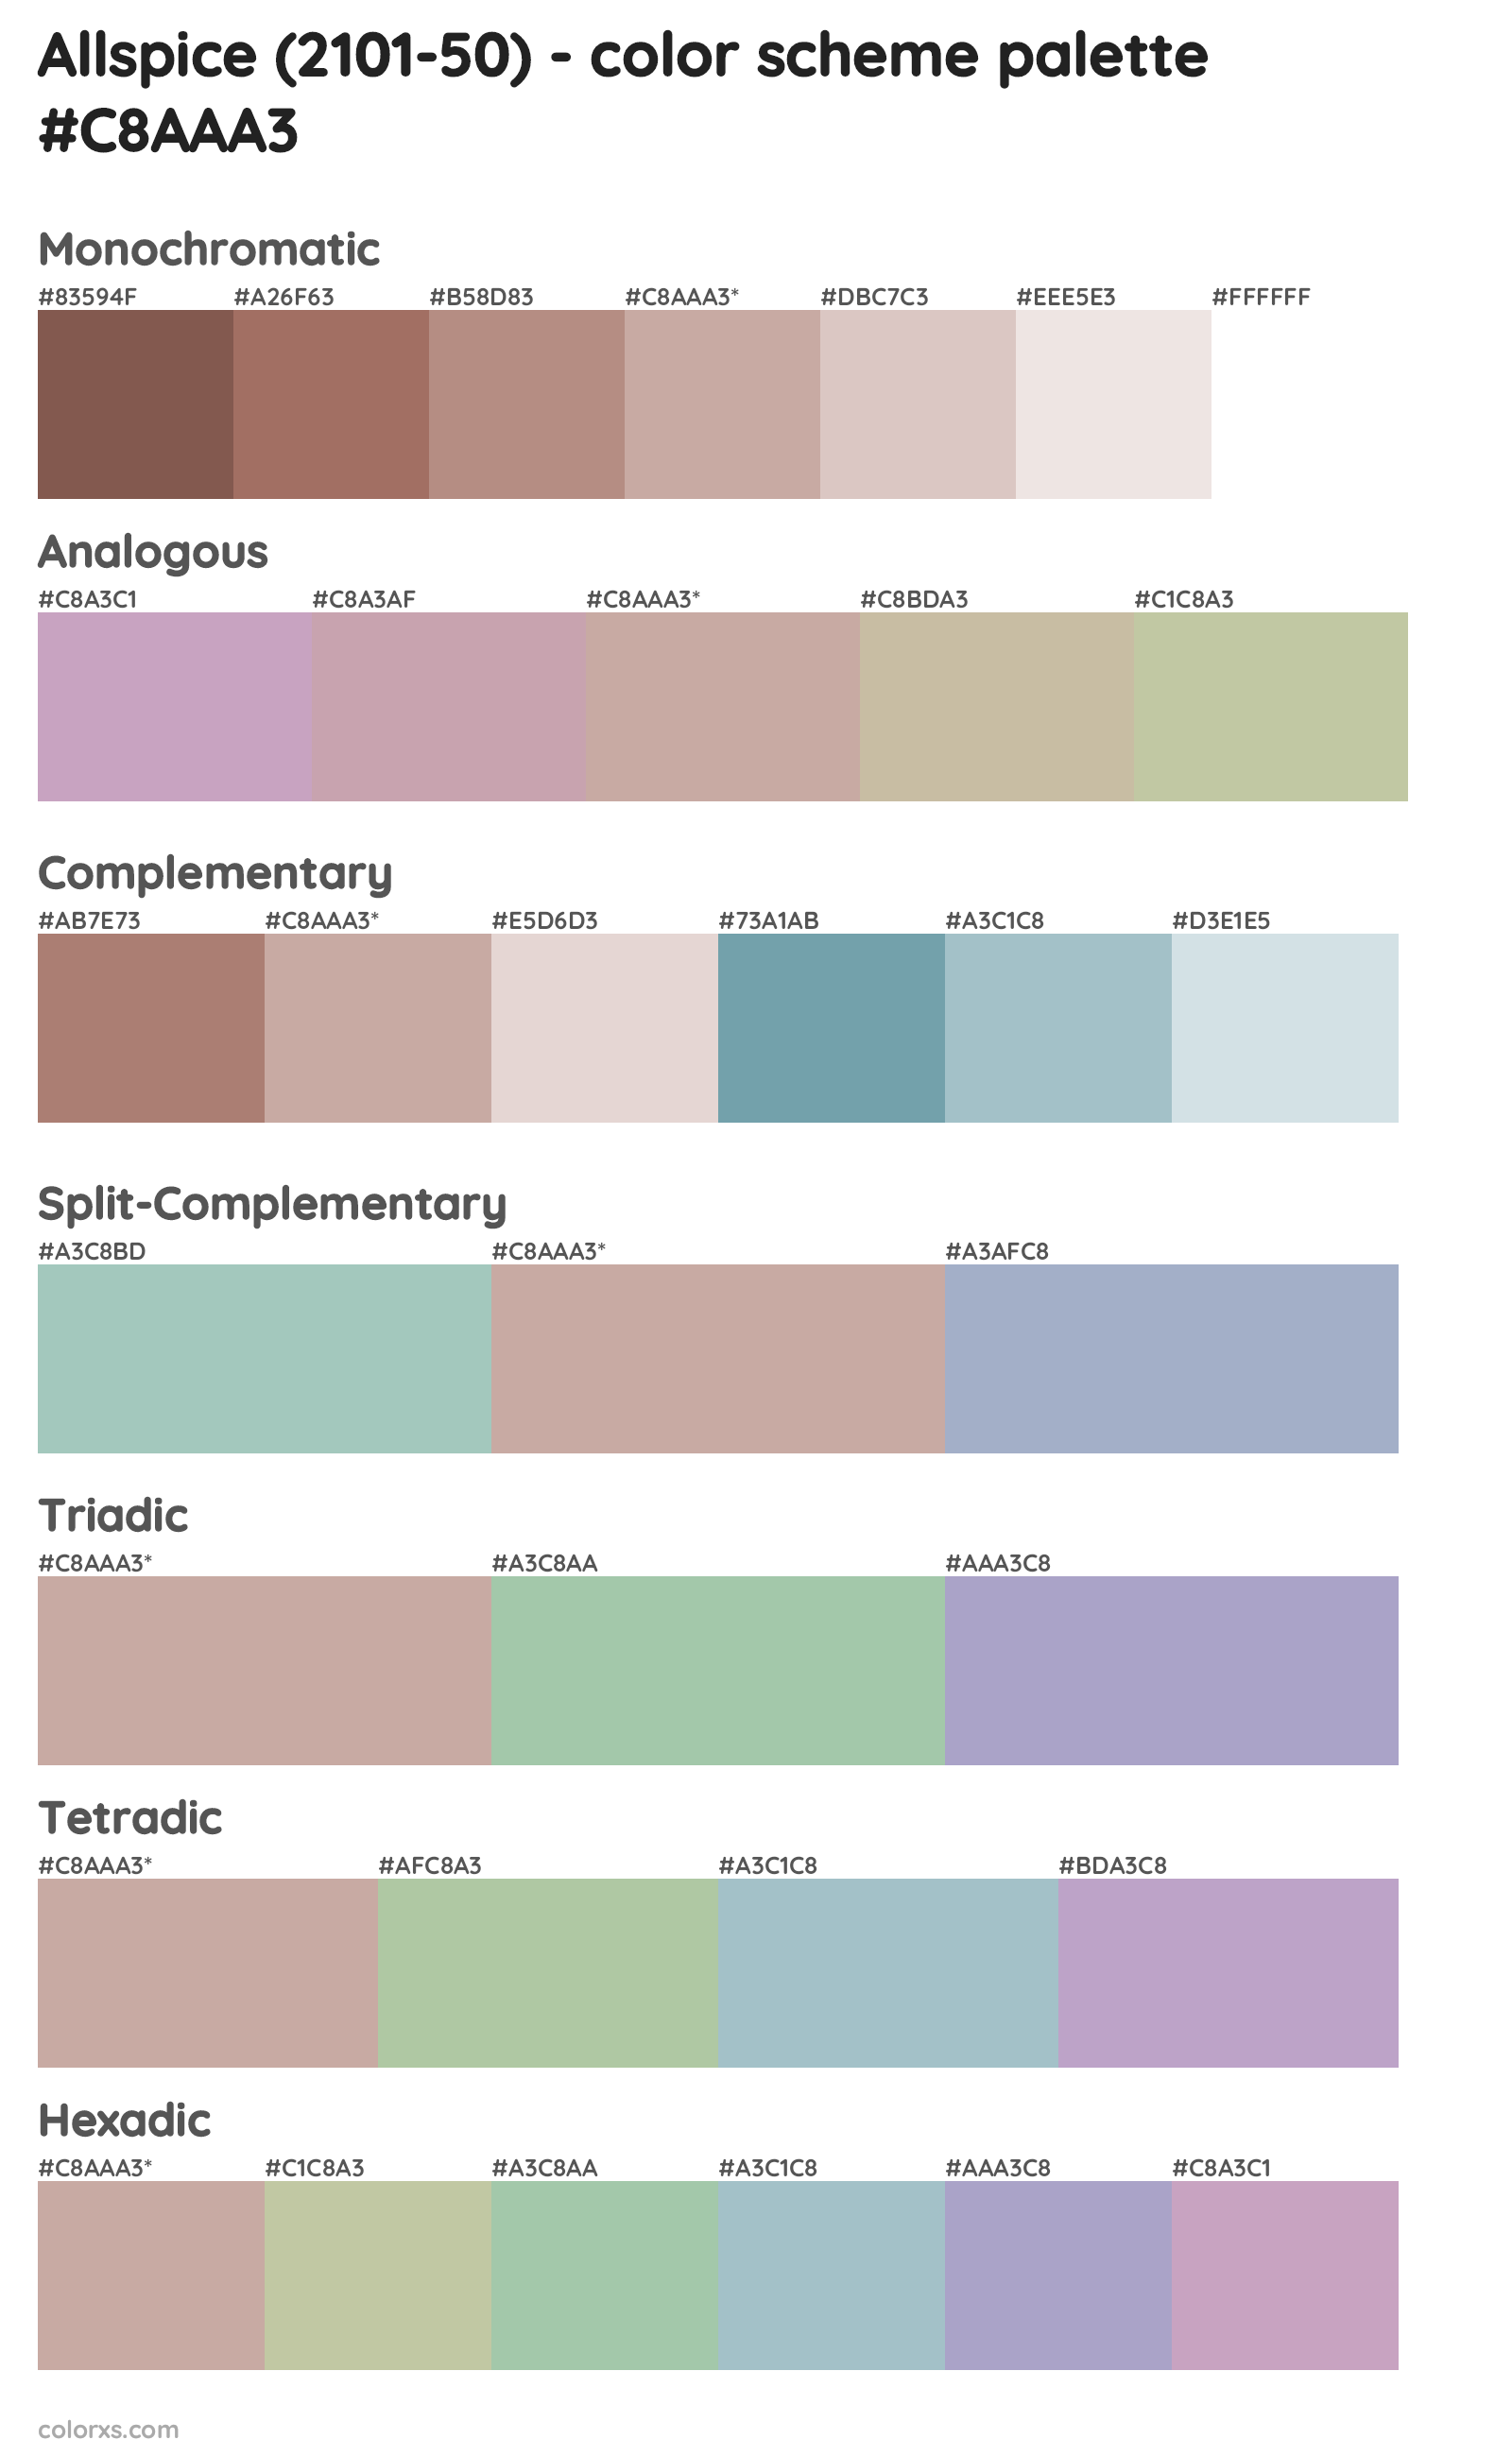 Allspice (2101-50) Color Scheme Palettes